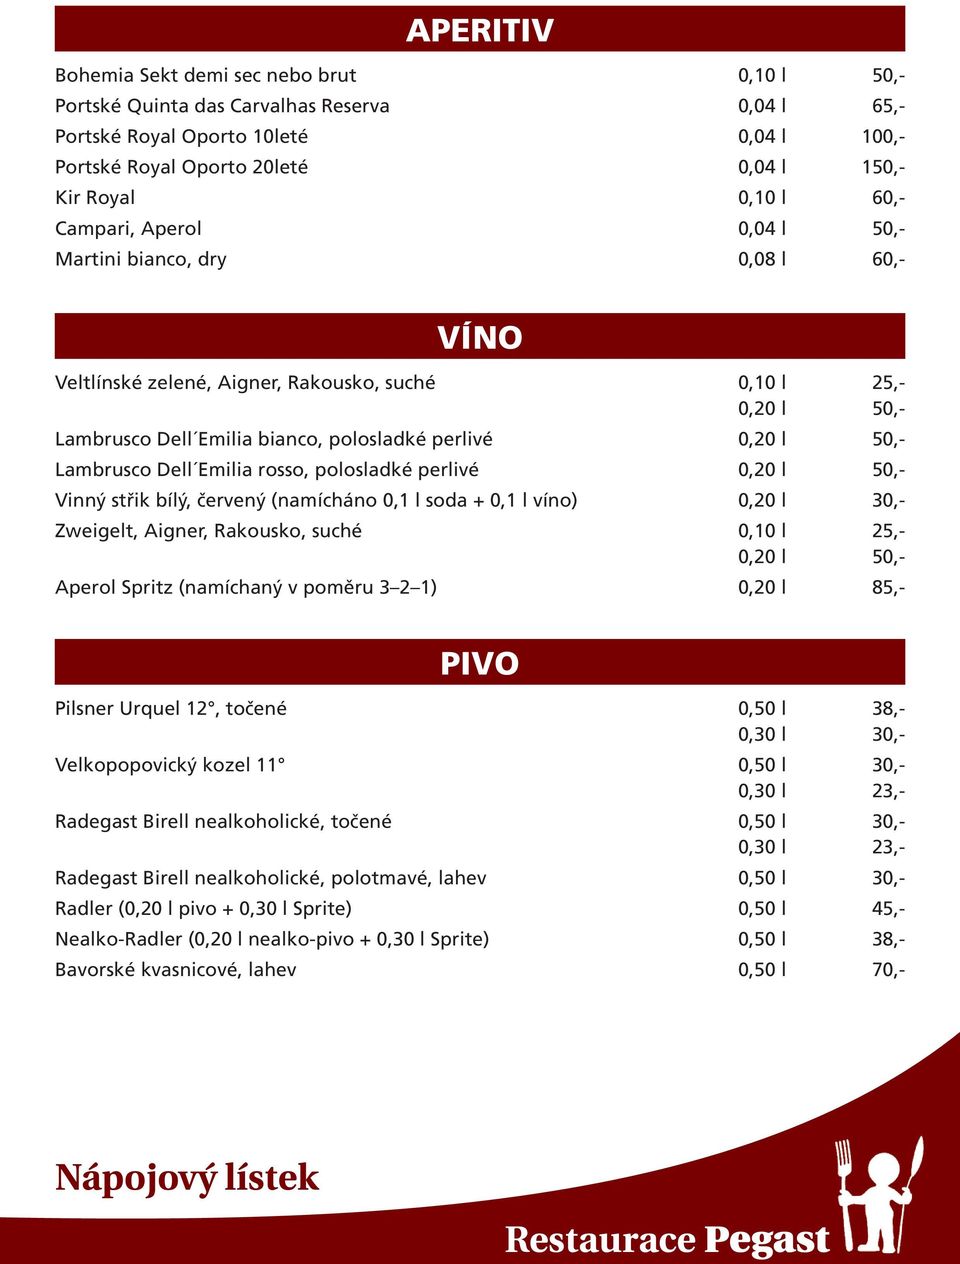 Lambrusco Dell Emilia rosso, polosladké perlivé 0,20 l 50,- Vinný střik bílý, červený (namícháno 0,1 l soda + 0,1 l víno) 0,20 l 30,- Zweigelt, Aigner, Rakousko, suché 0,10 l 25,- 0,20 l 50,- Aperol